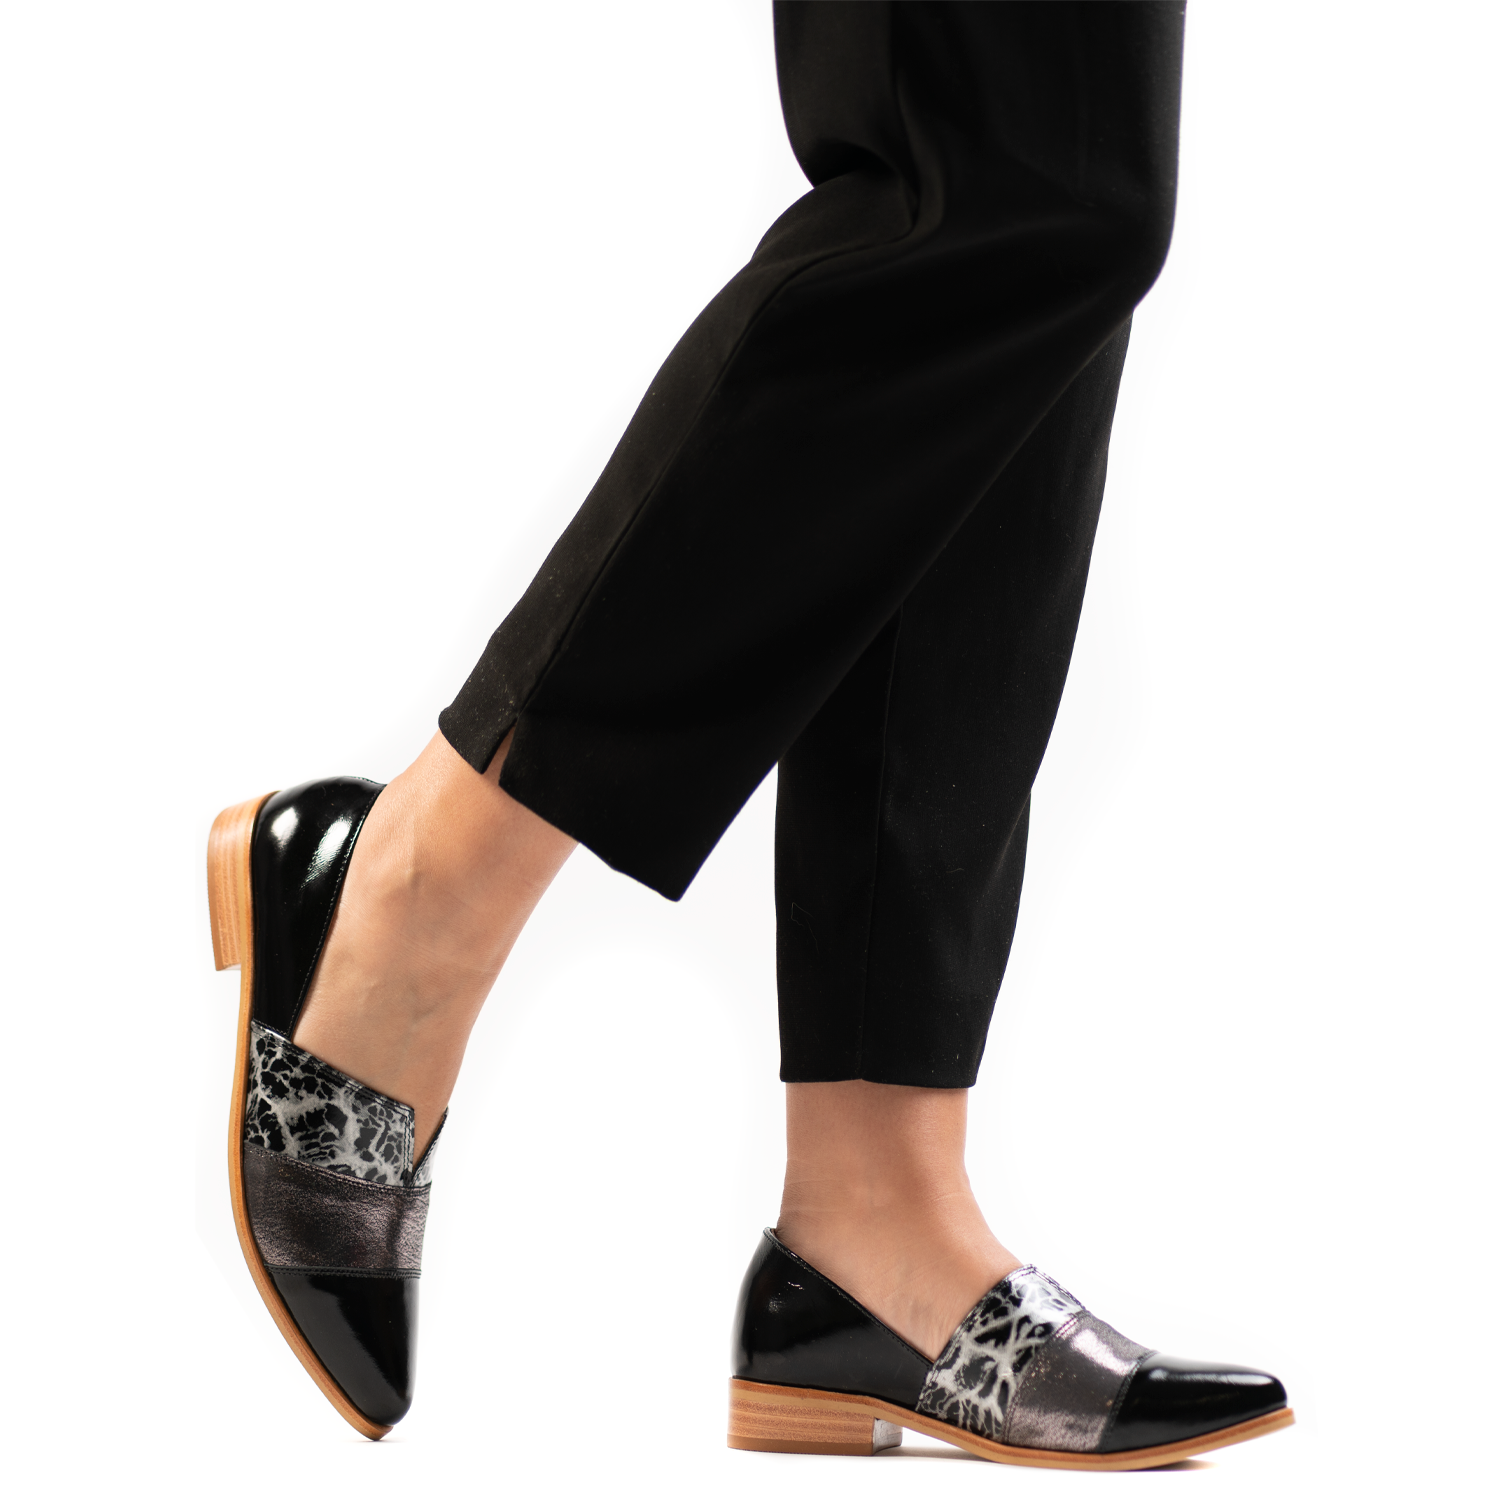 Zapatos Mujer Dorado Negro y Plateado Calzado Cuero chileno